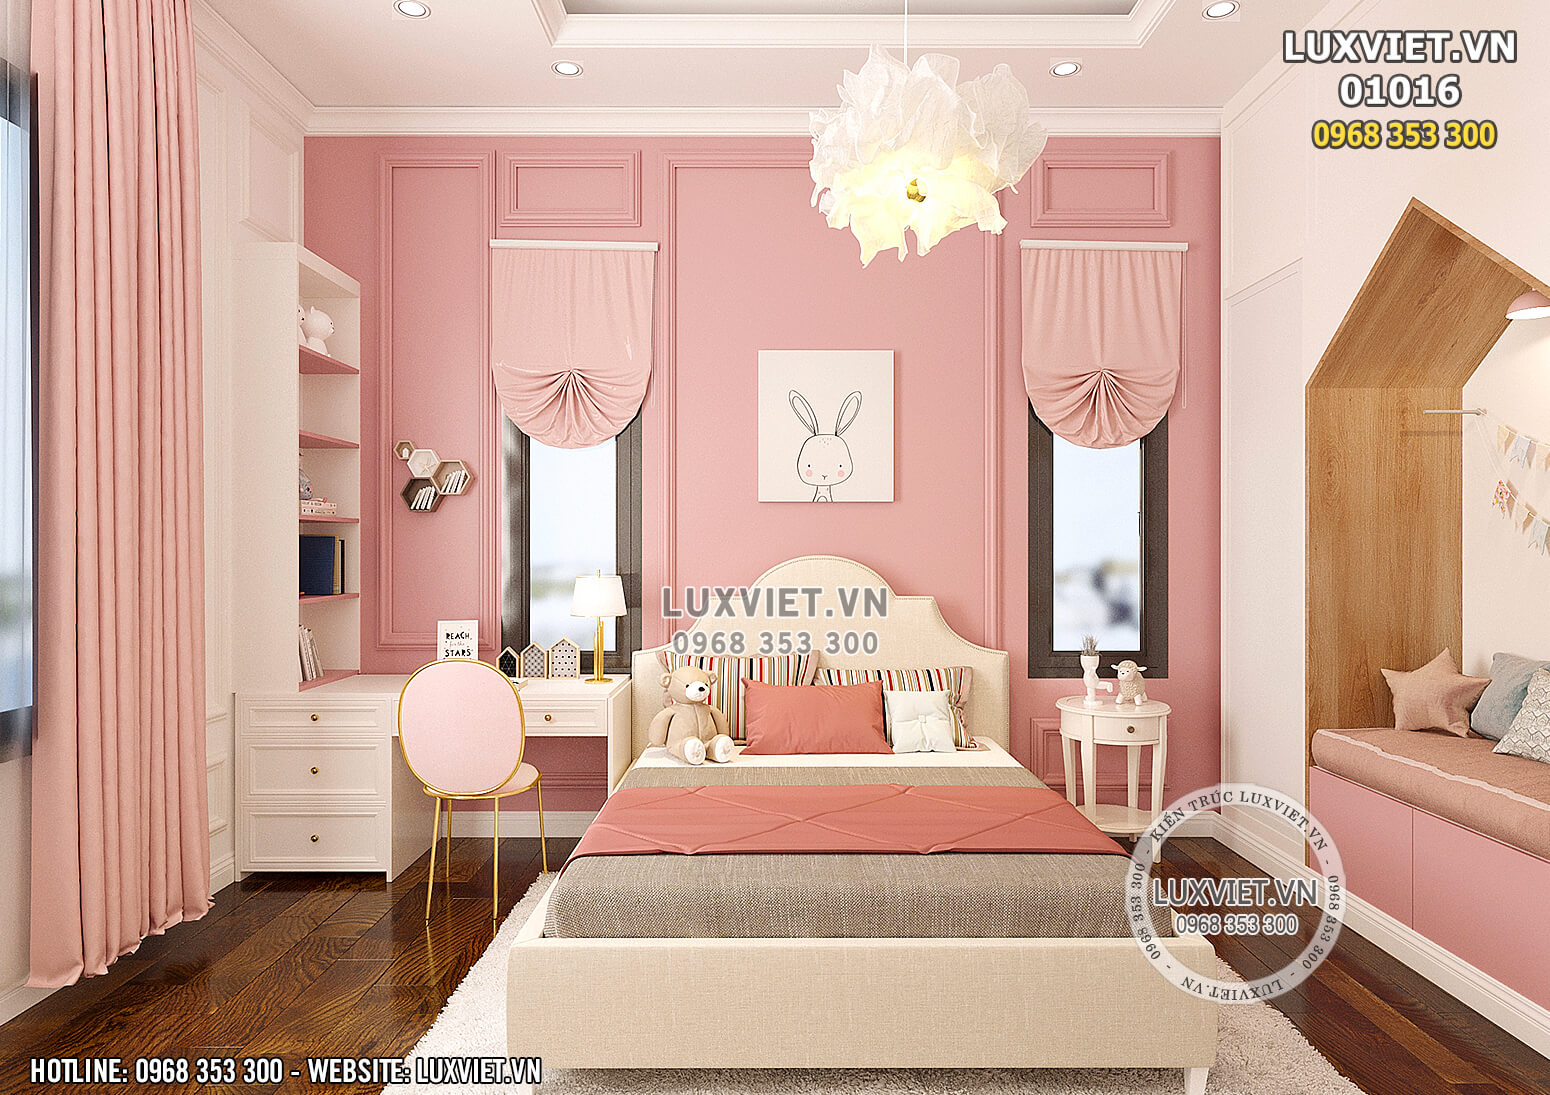 Hình ảnh: Không gian khu vực phòng ngủ dành cho con gái của chủ đầu tư